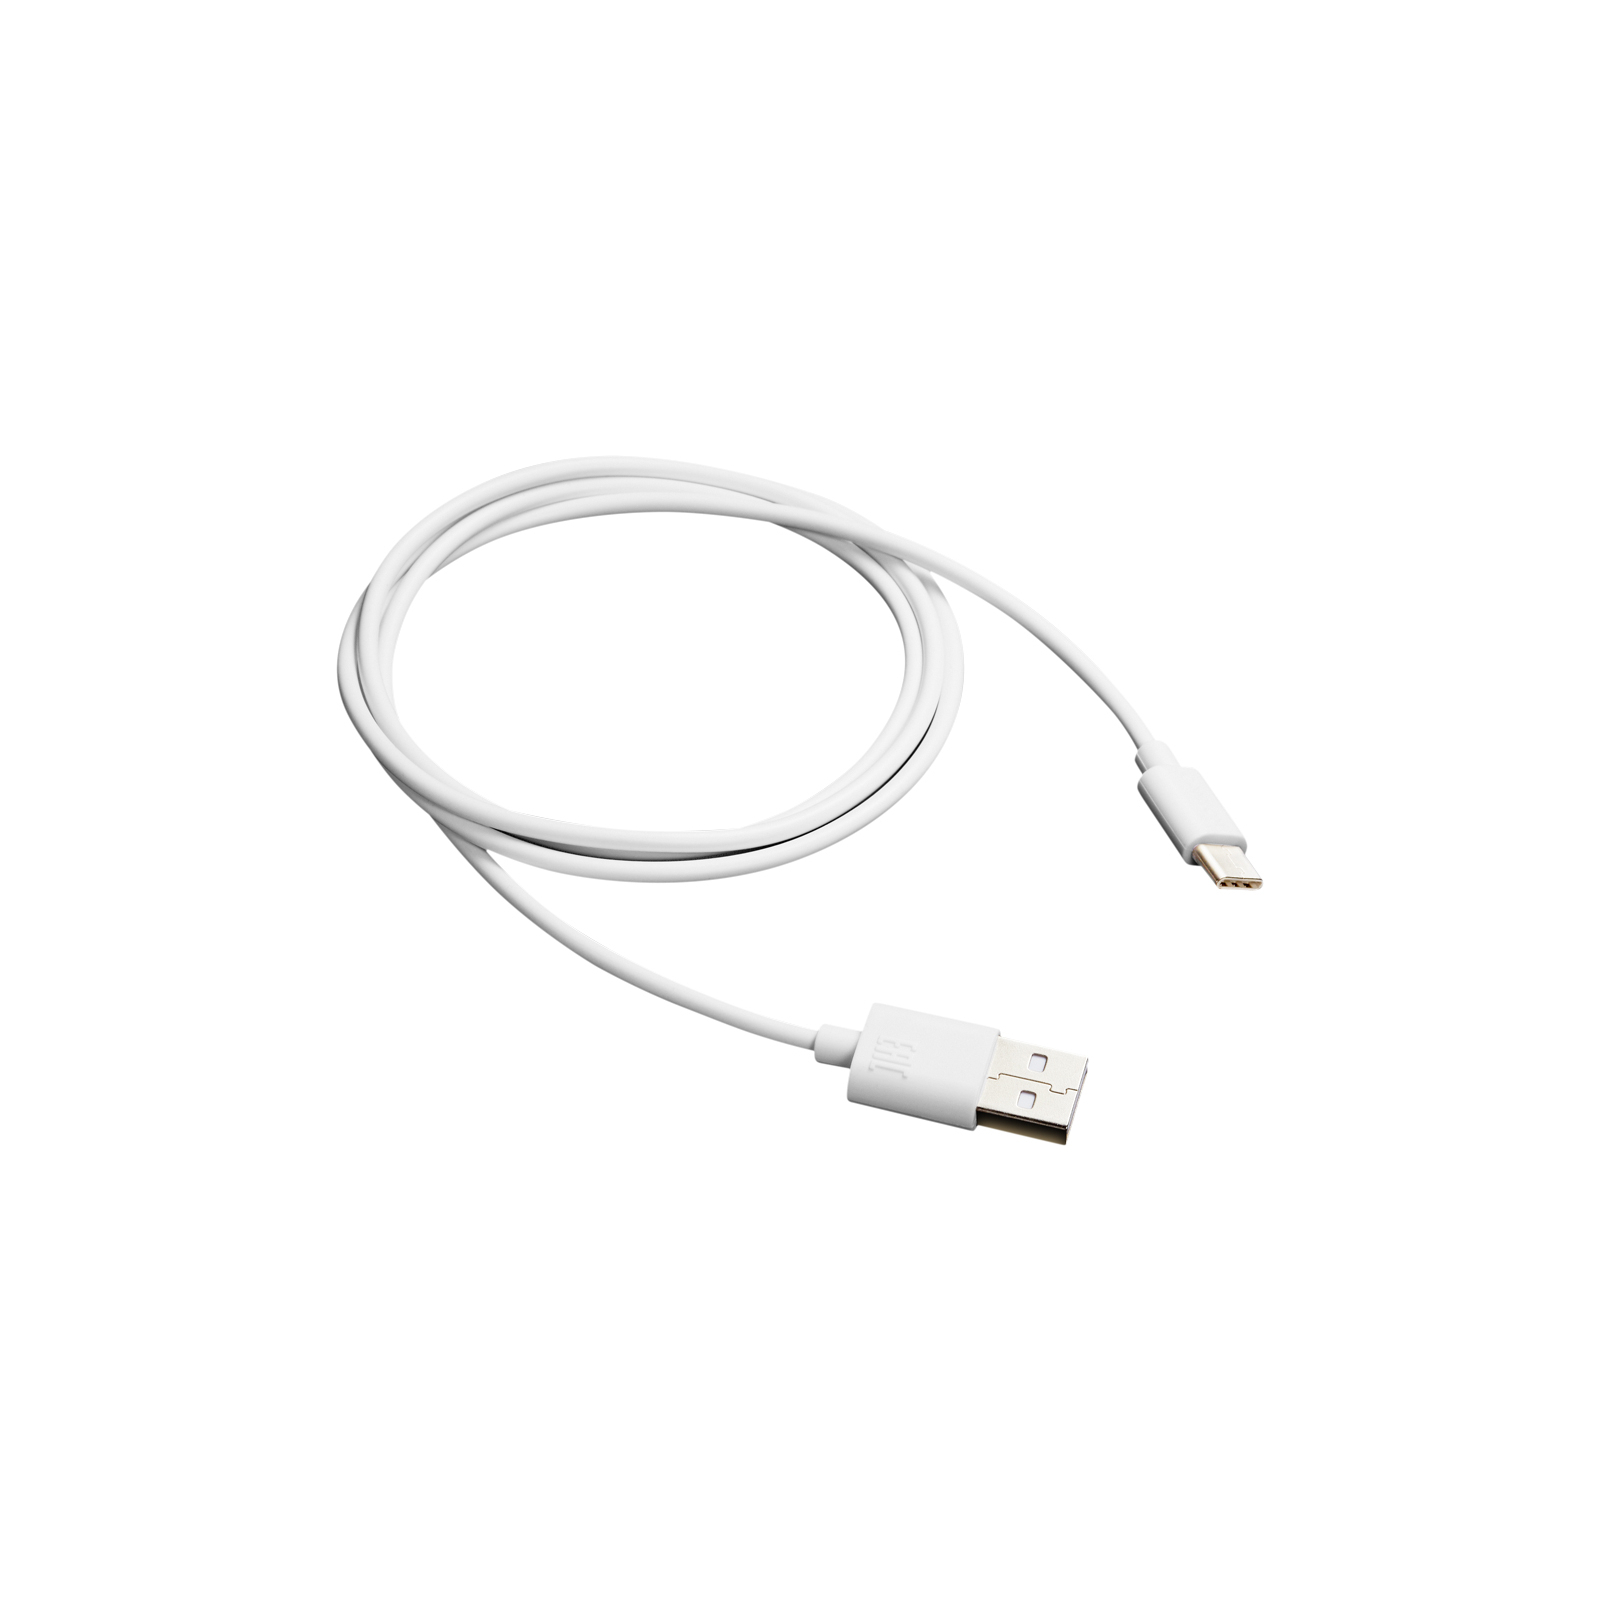 Дата кабель USB 2.0 AM to Type-C 1.0m white Canyon (CNE-USBC1W)